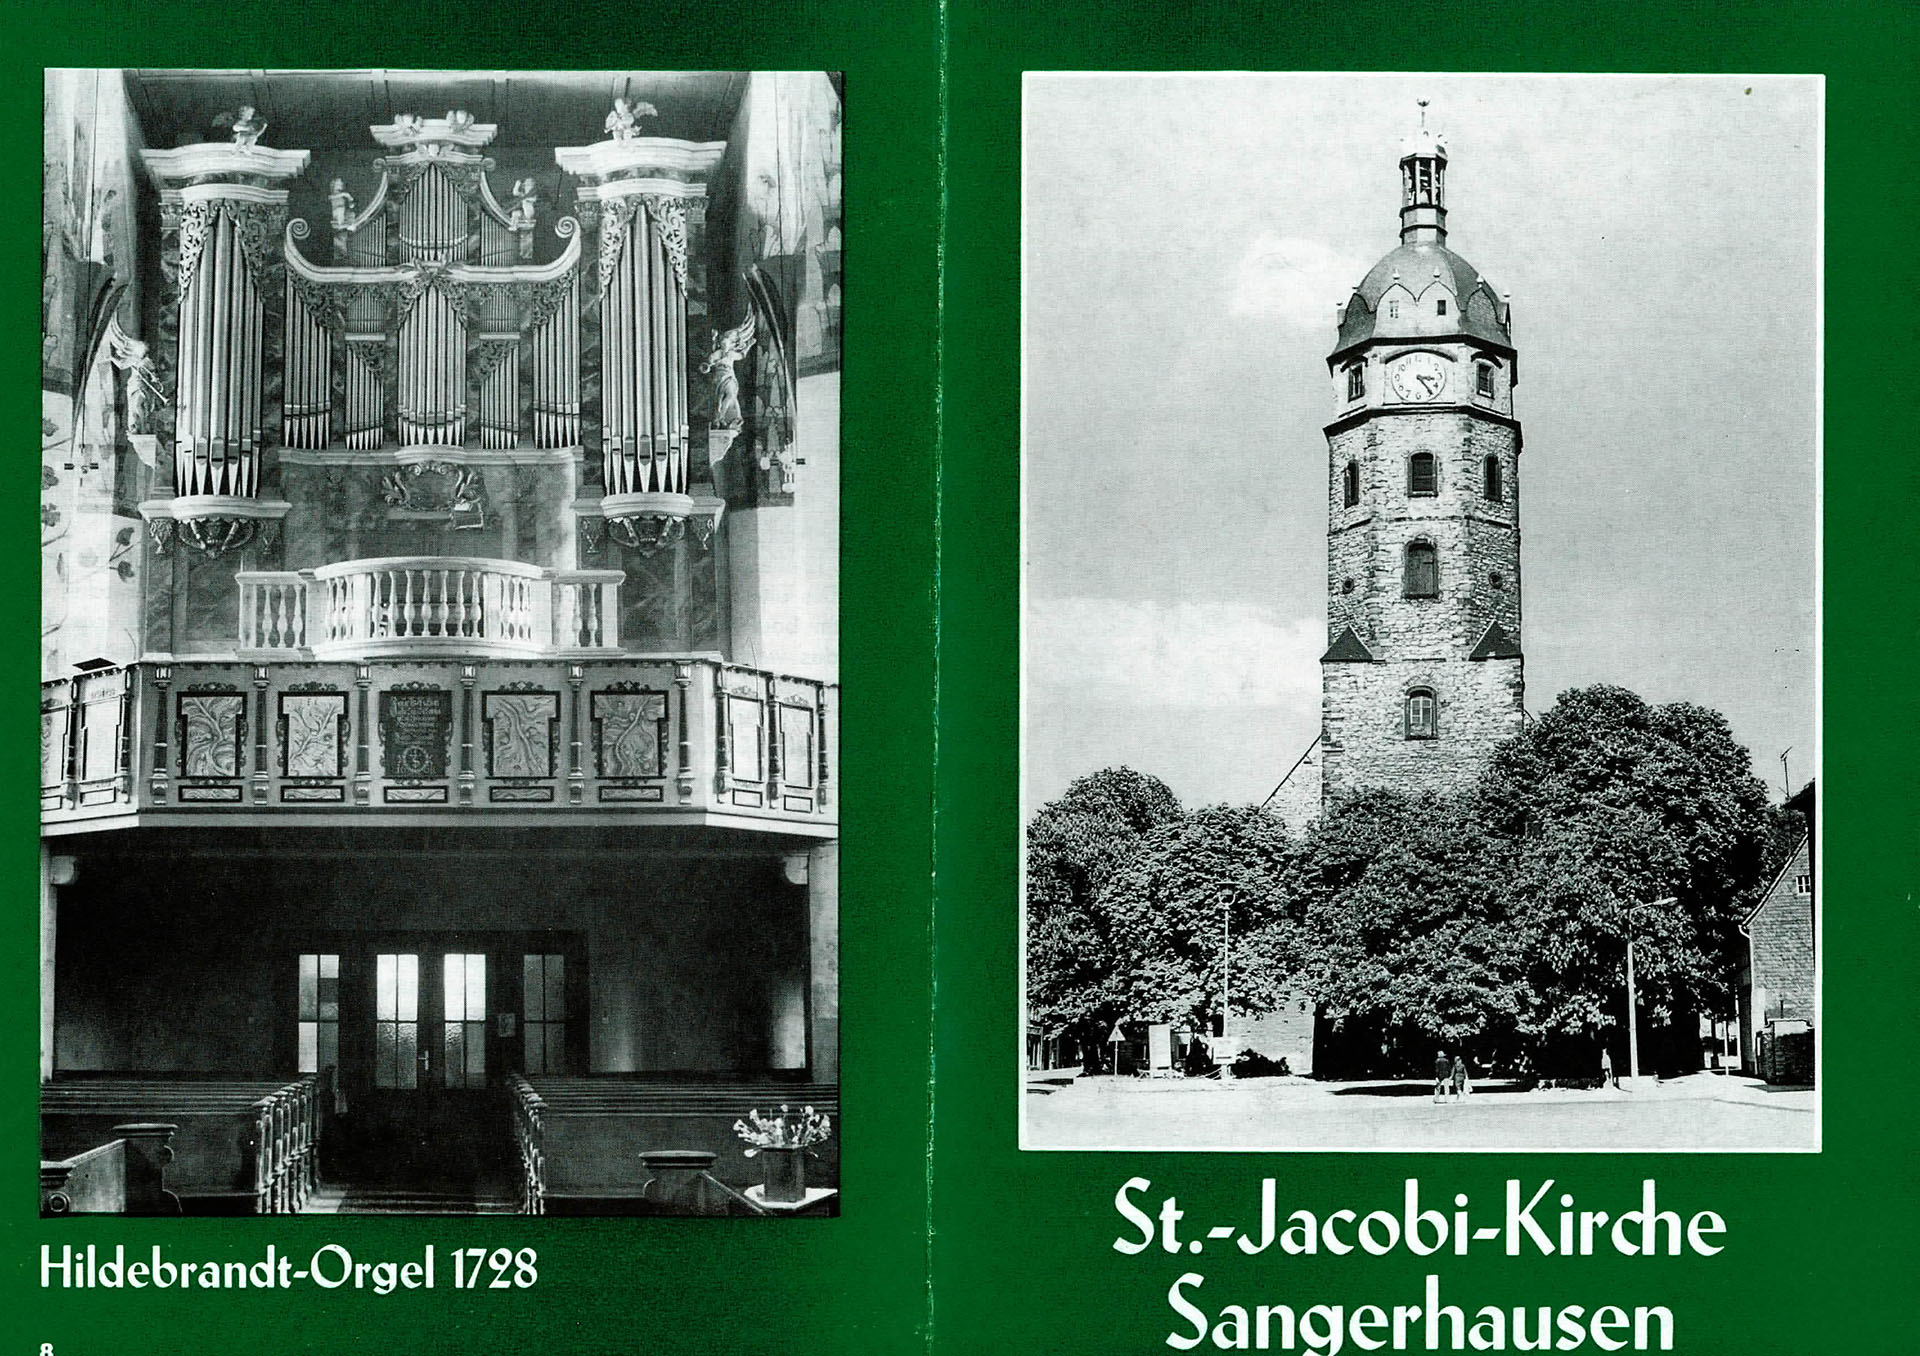 St. - Jacobi - Kirche Sangerhausen